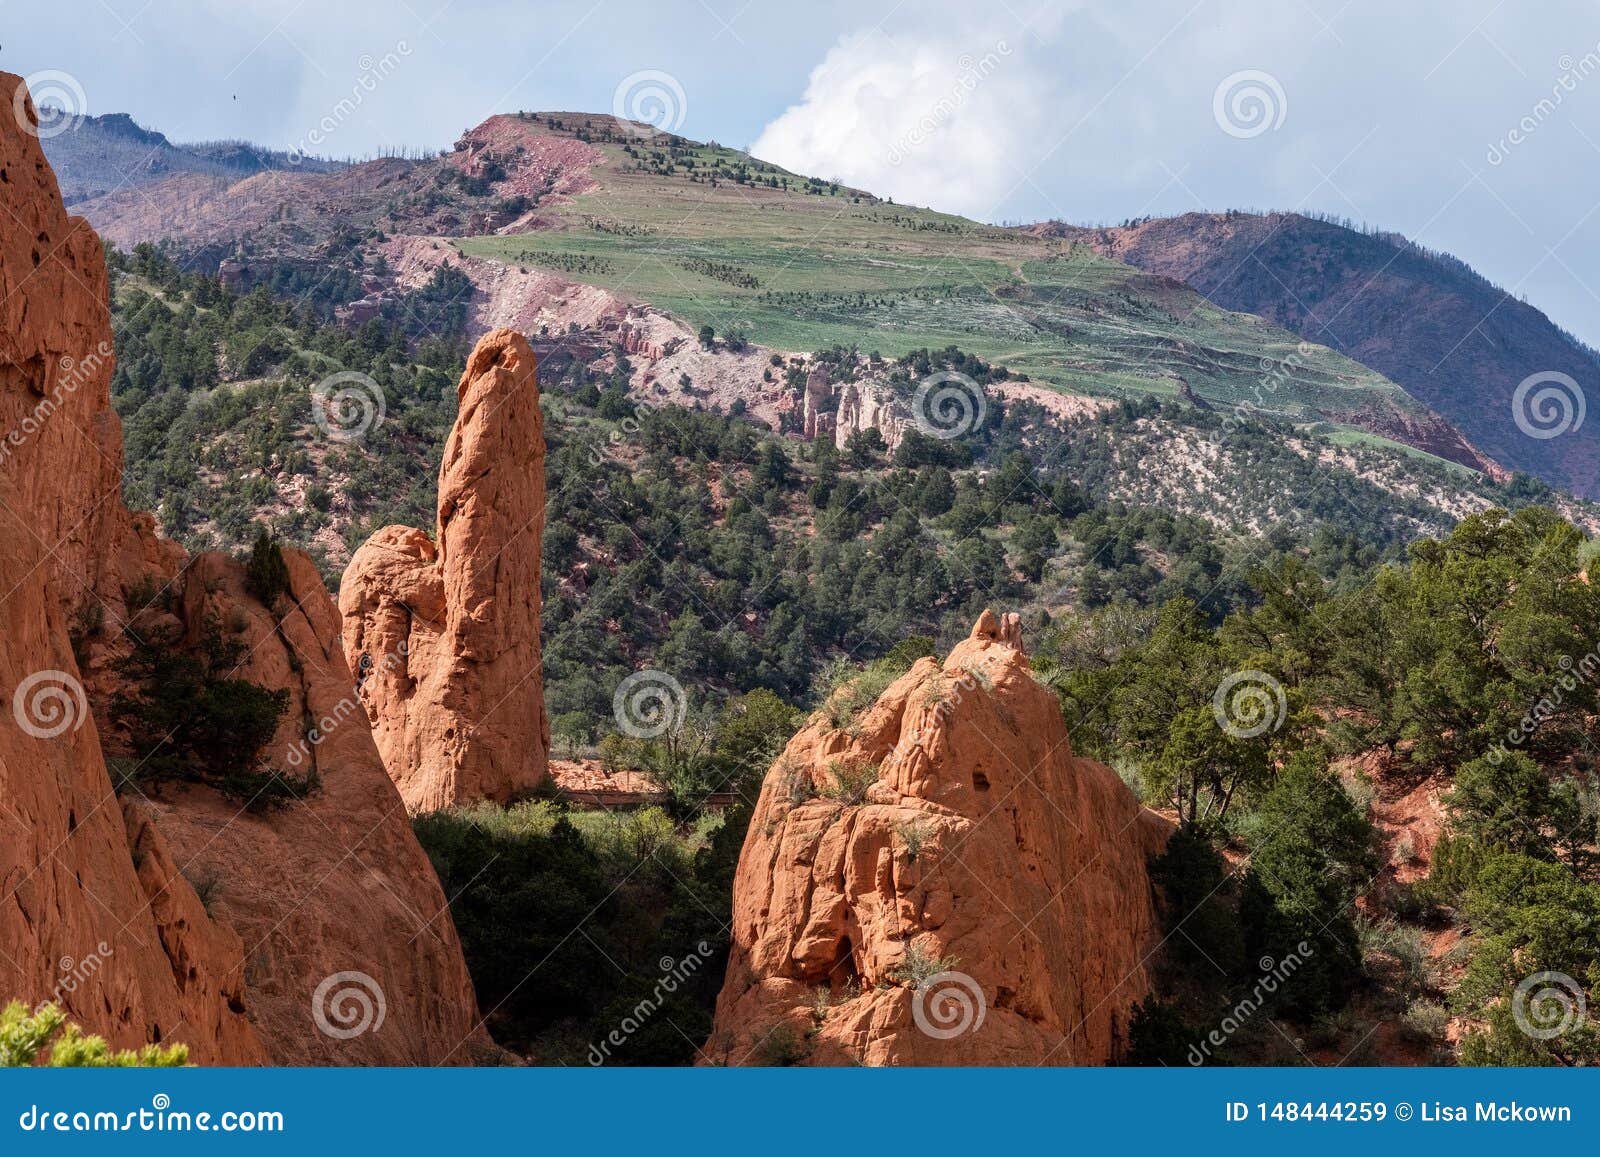 Garden of the Gods Colorado Springs Rocky Mountains Stock Image - Image ...